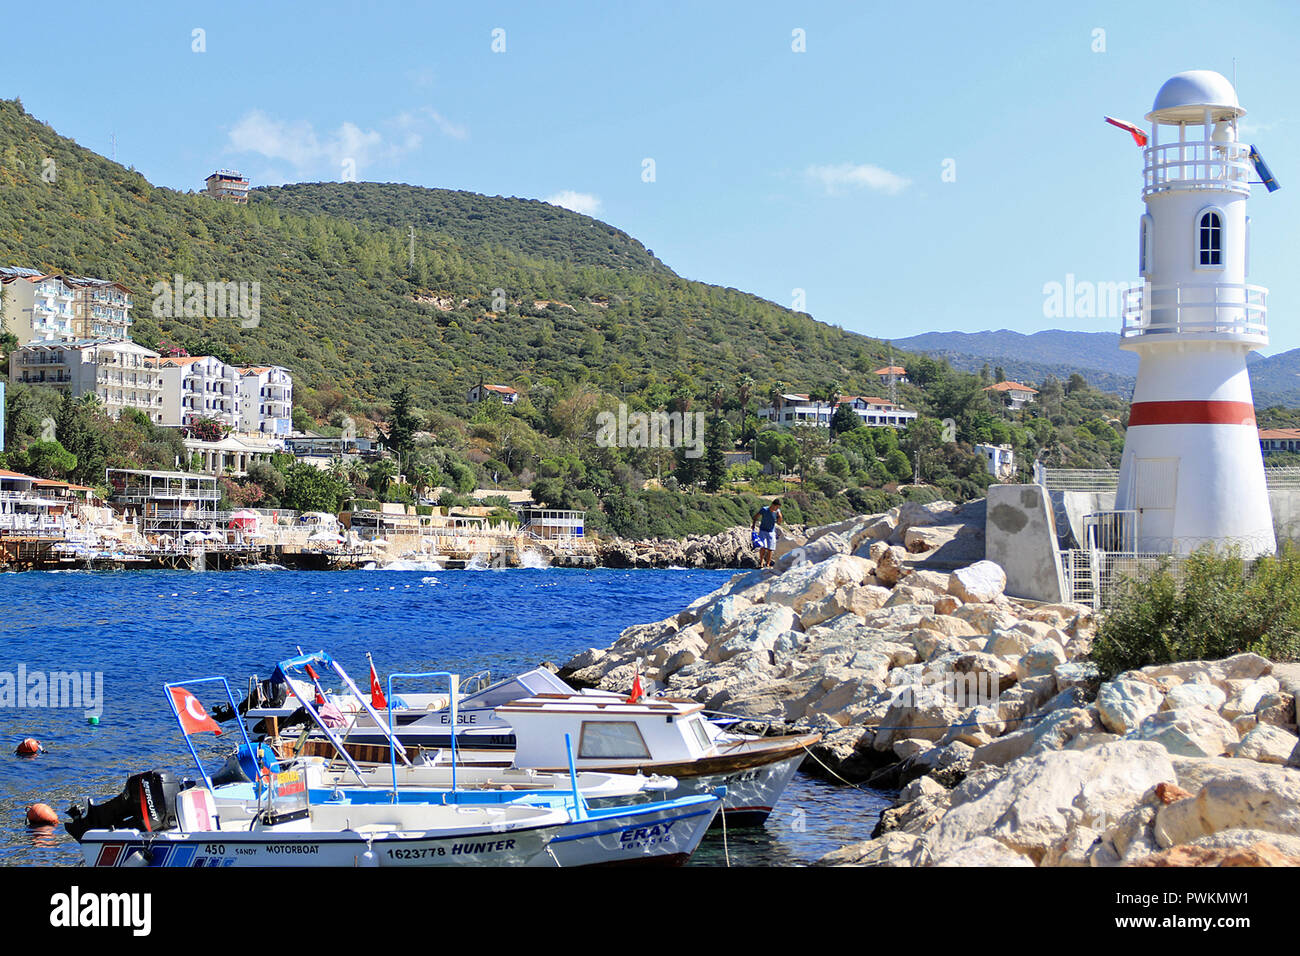 Il faro del porto. Kaş (pronunciato "Kash') è una piccola pesca, immersioni, vela e città turistica e un distretto della provincia di Antalya in Turchia, 168 km a ovest della città di Antalya. Come una località turistica, è relativamente incontaminata. Foto Stock